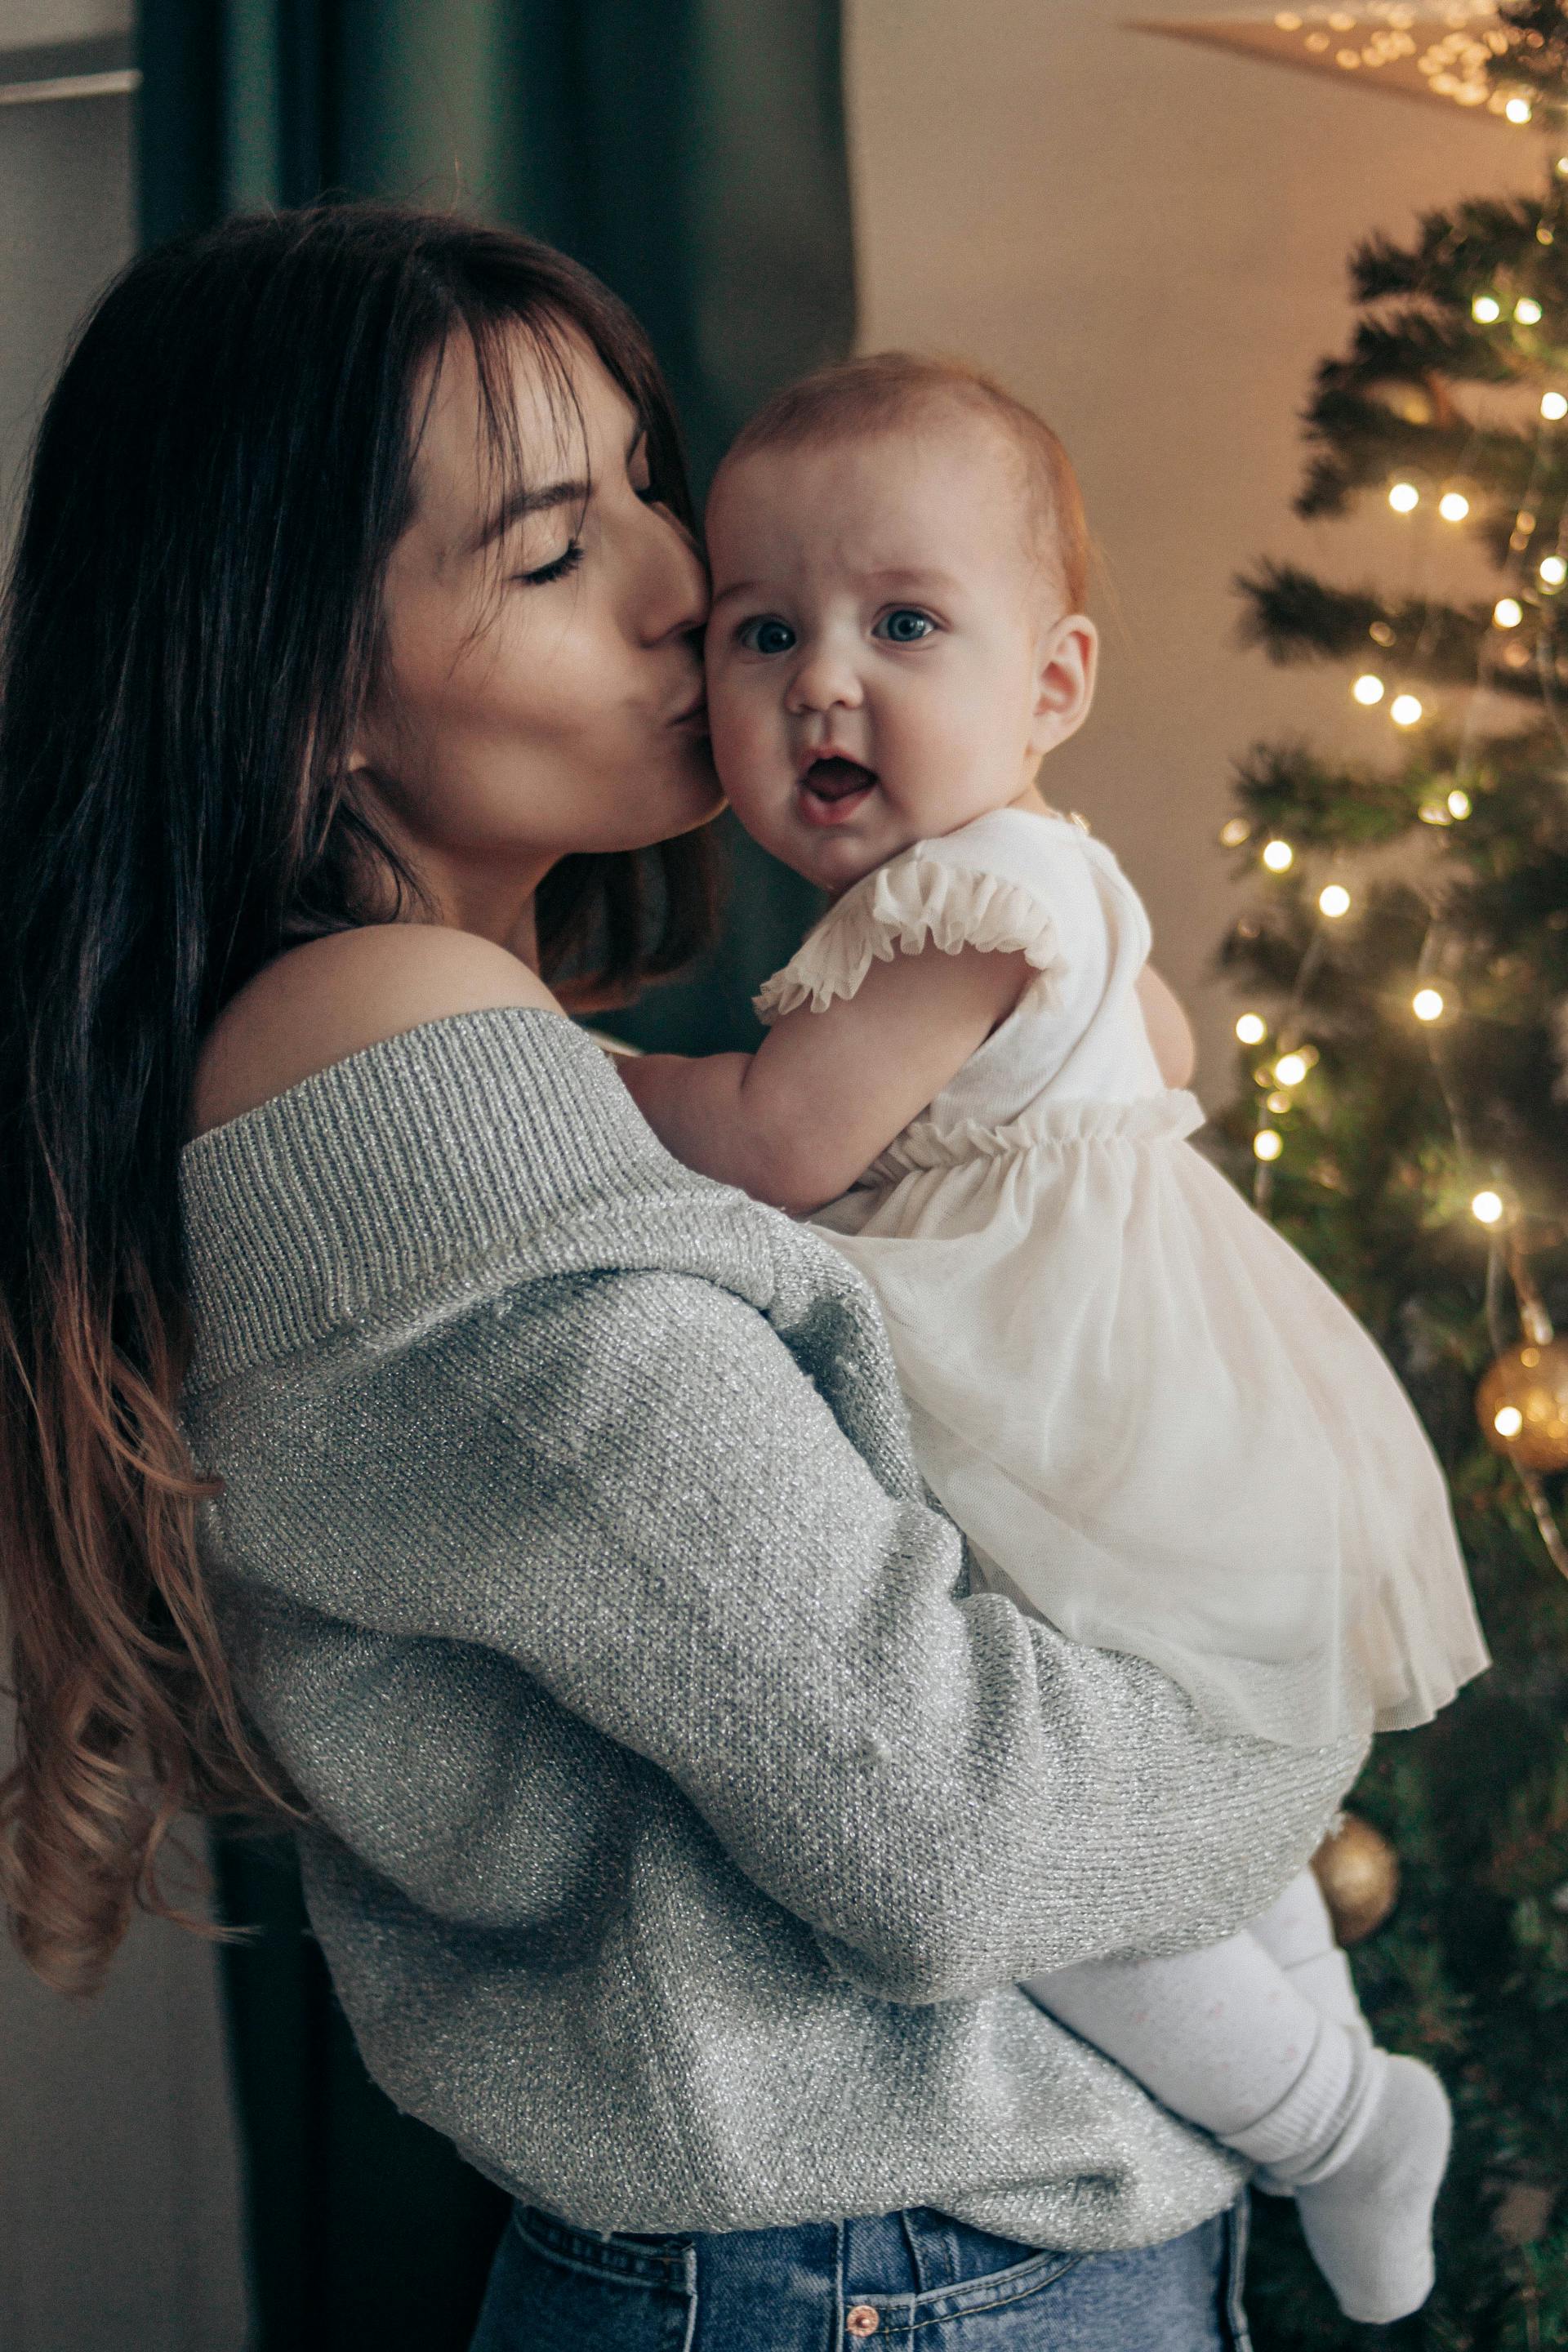 Une mère embrassant sa petite fille | Source : Pexels